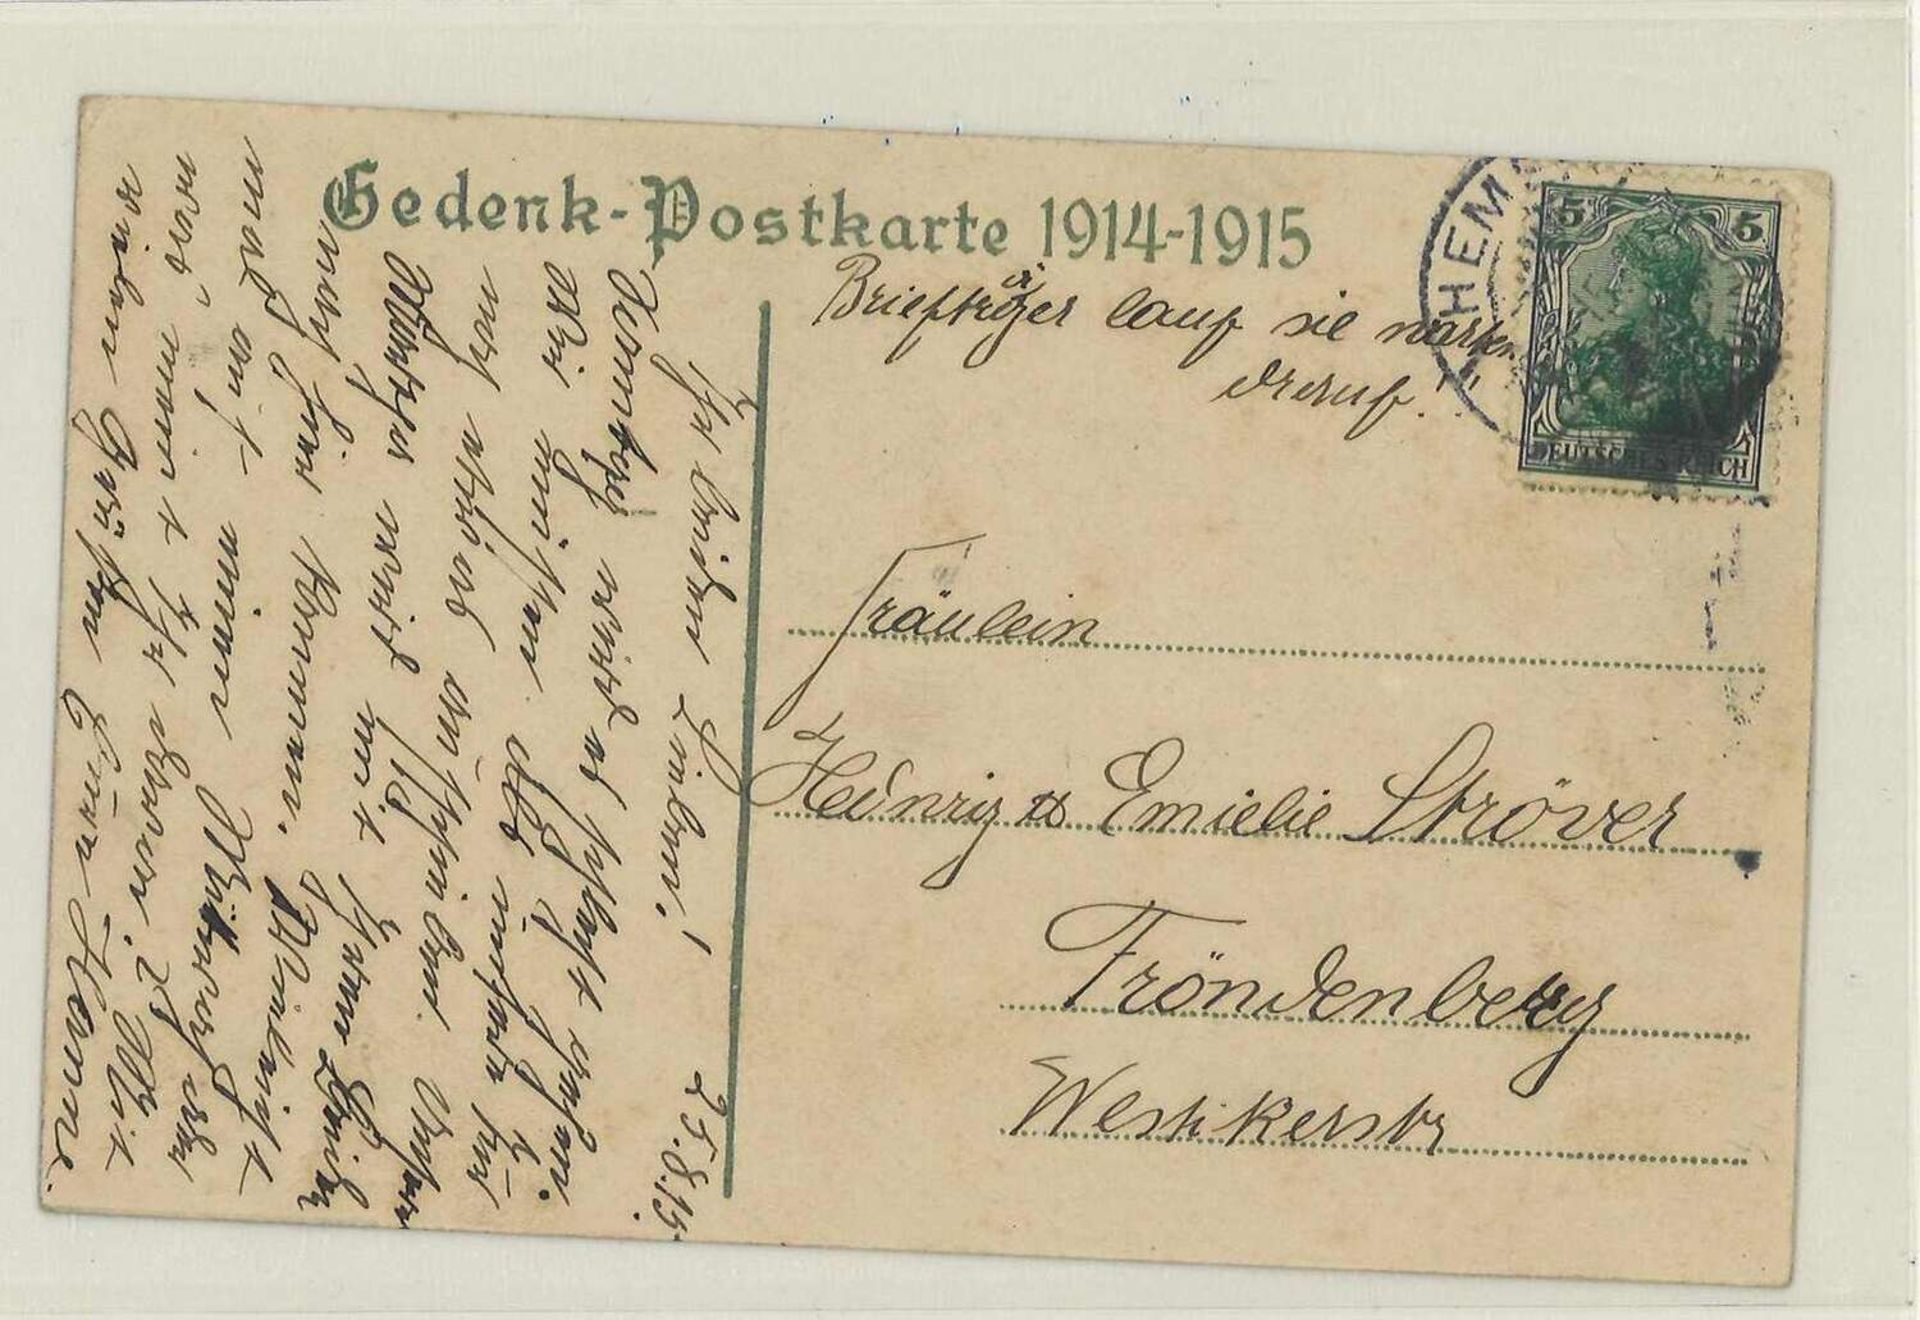 Deutsches Reich, Gedenk - Postkarte 1914-1915, gelaufen mit Sinnspruch. German Reich, commemorative